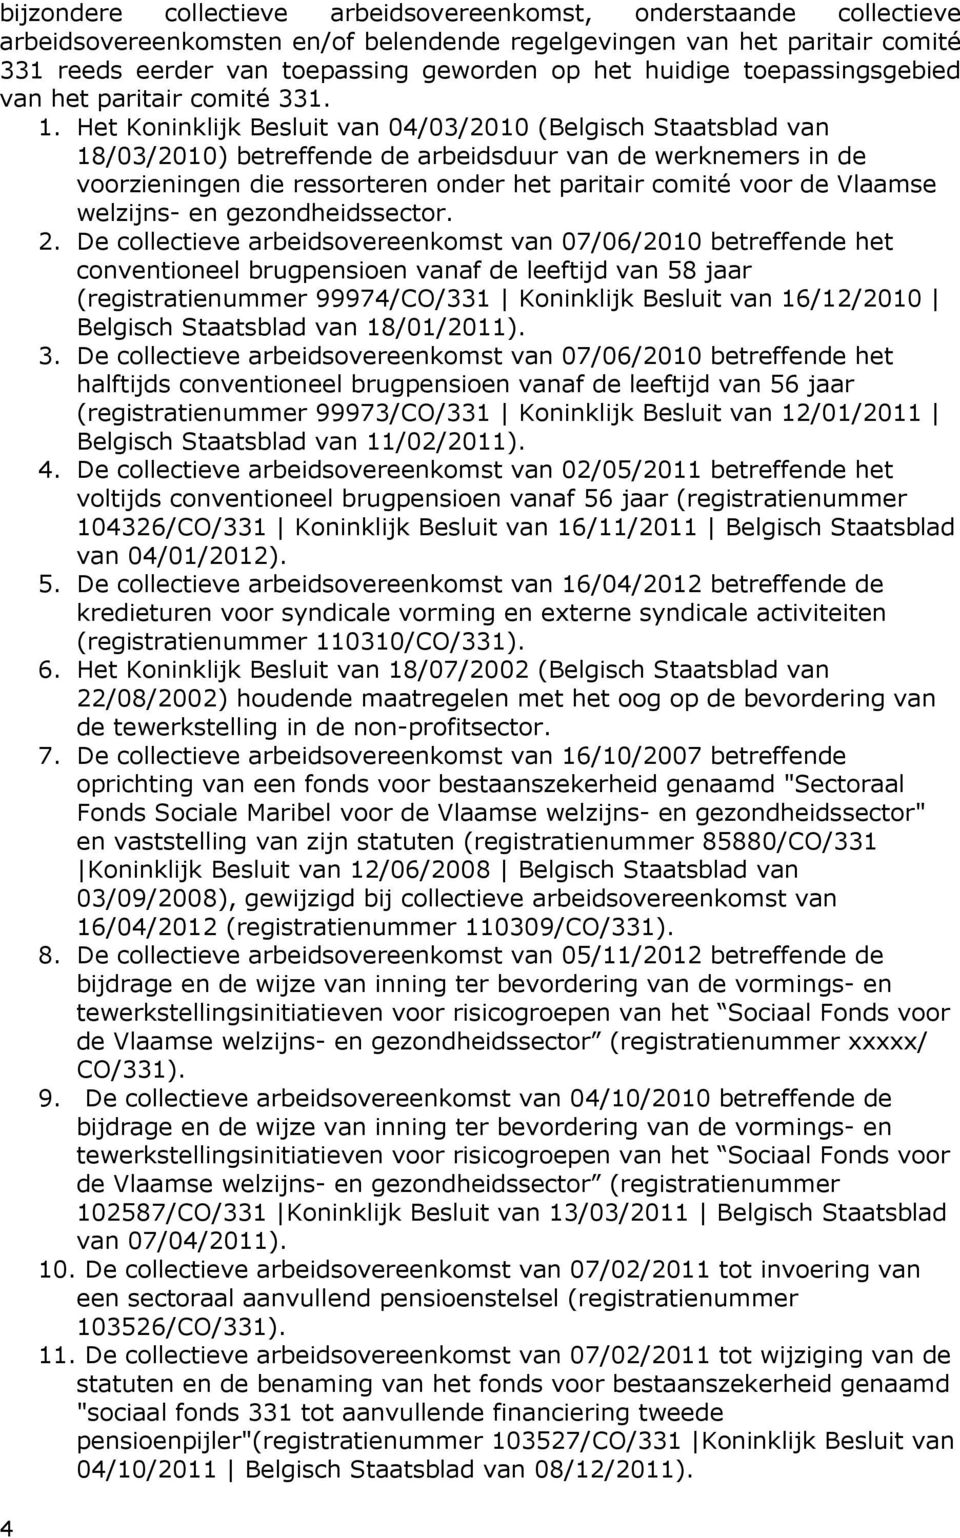 Het Koninklijk Besluit van 04/03/2010 (Belgisch Staatsblad van 18/03/2010) betreffende de arbeidsduur van de werknemers in de voorzieningen die ressorteren onder het paritair comité voor de Vlaamse